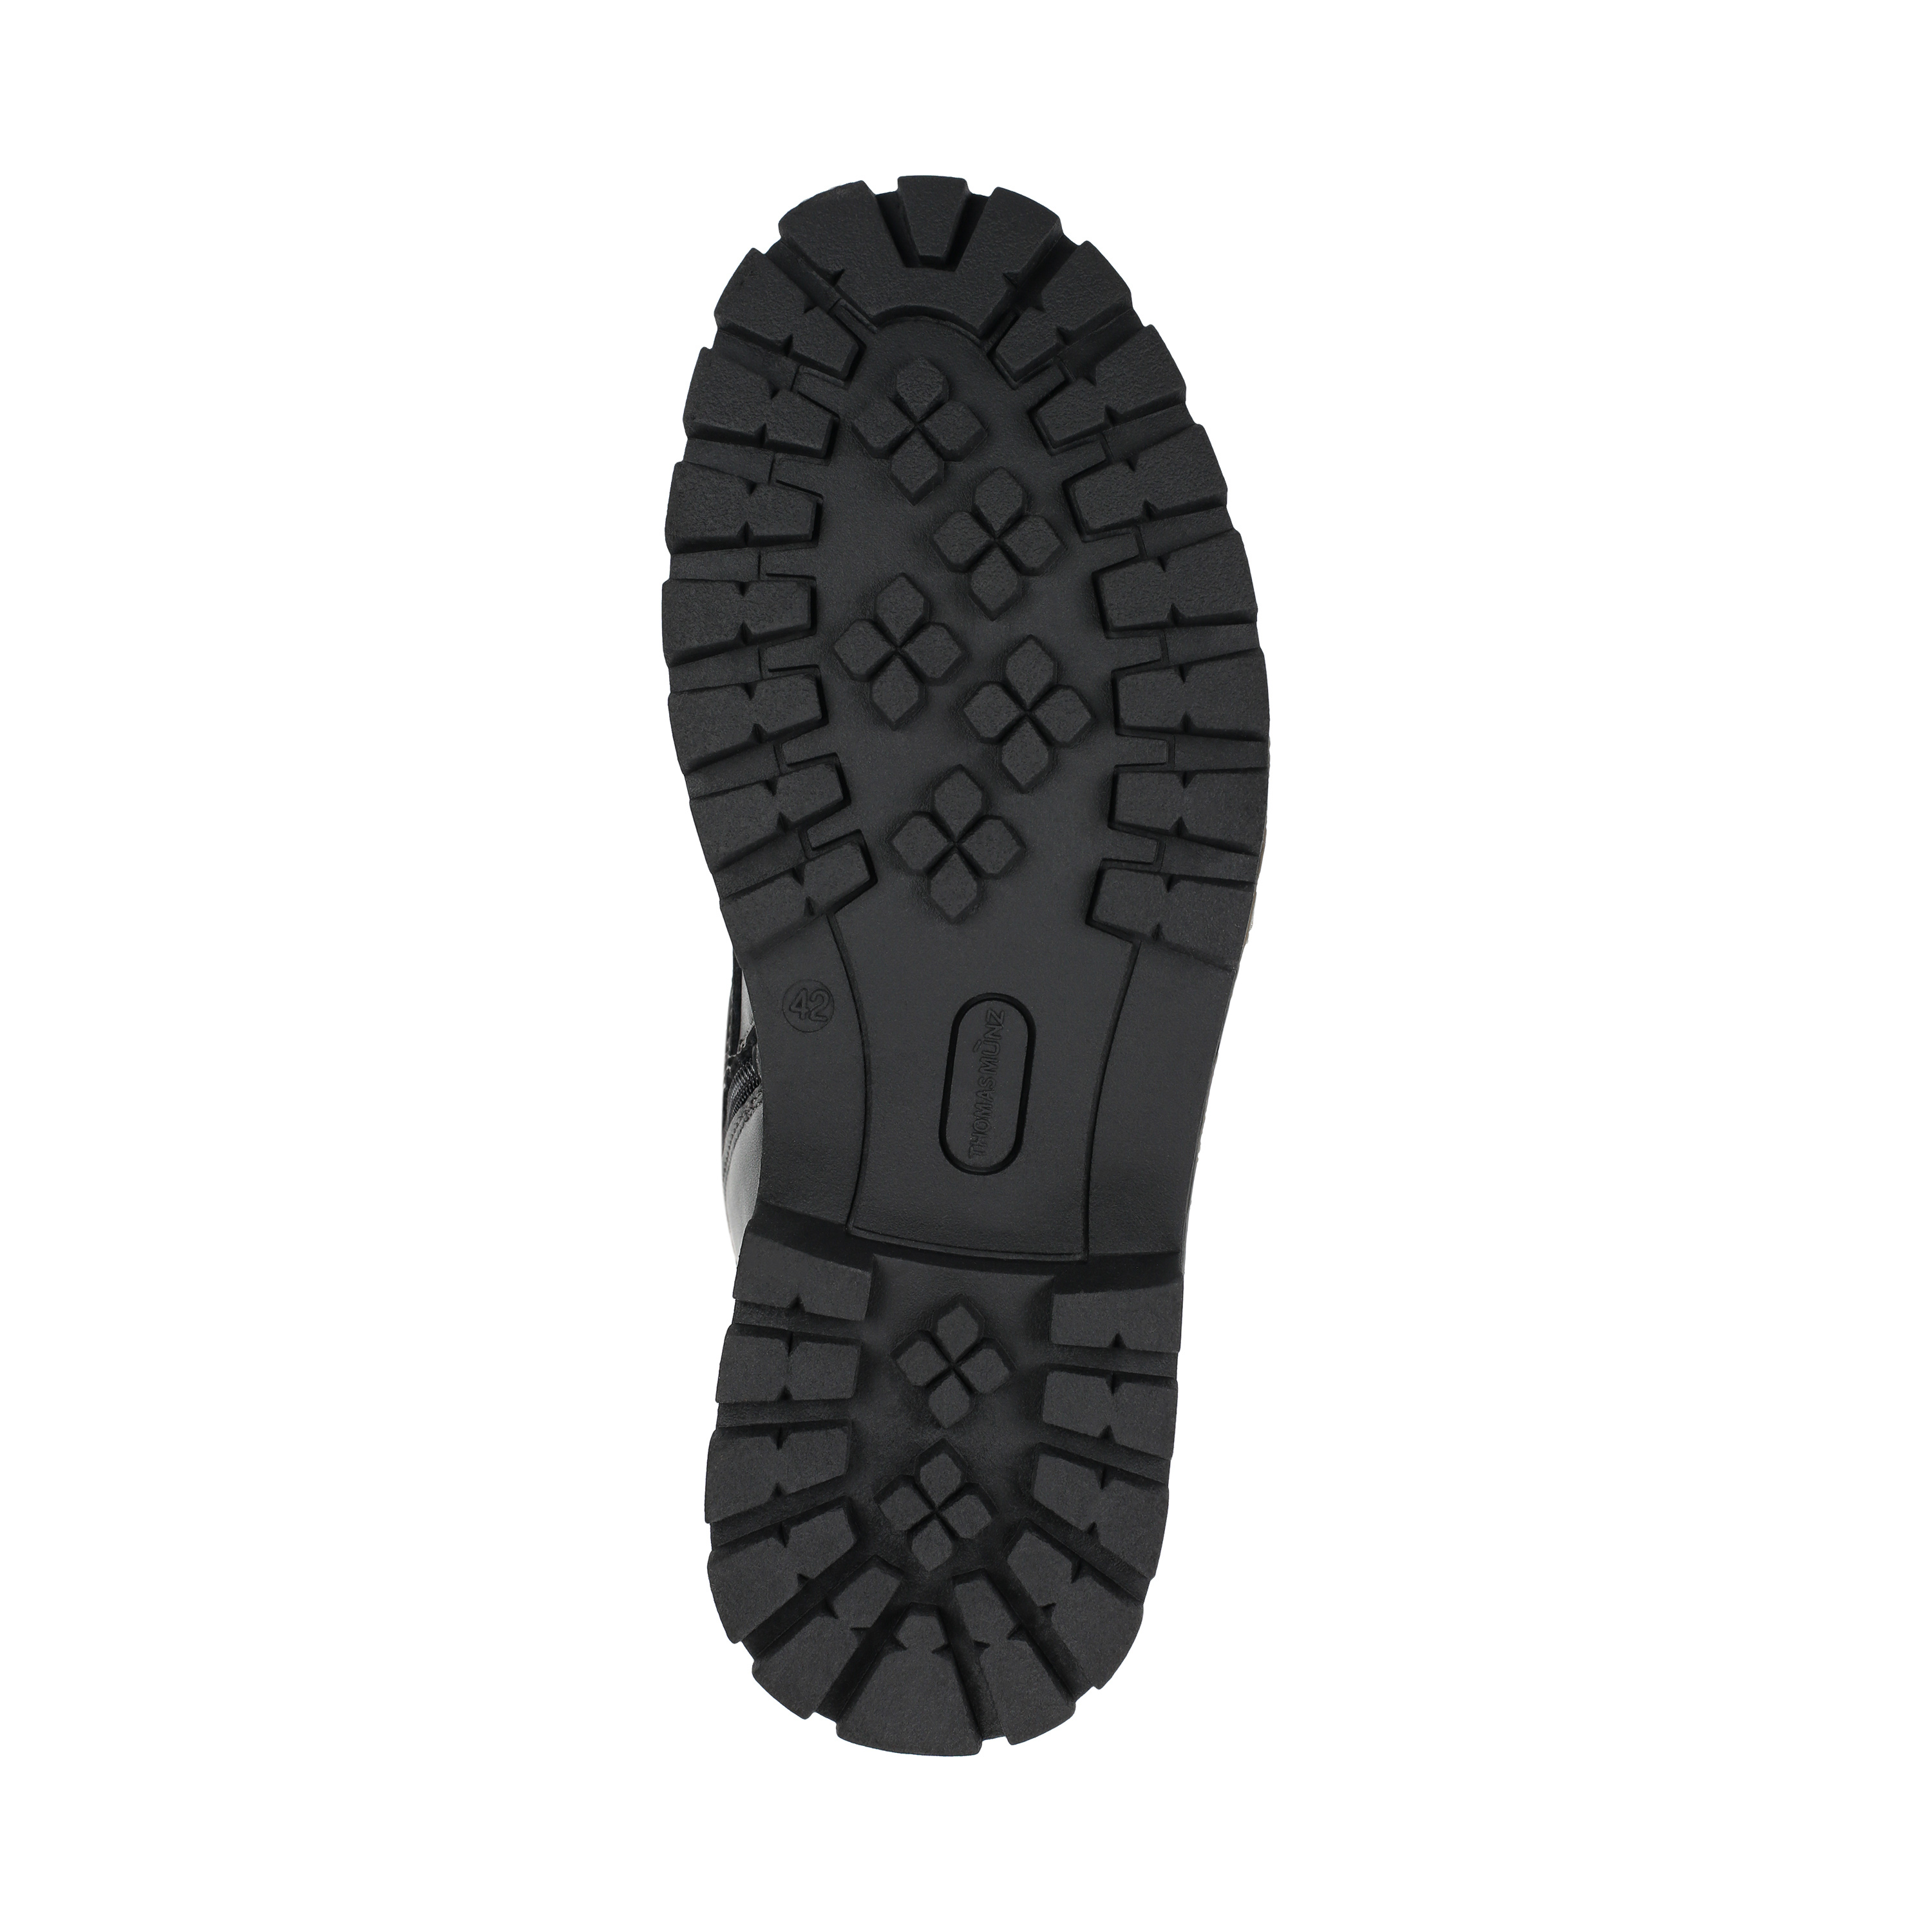 Ботинки Thomas Munz 187-051A-5102 187-051A-5102, цвет черный, размер 41 дерби - фото 4